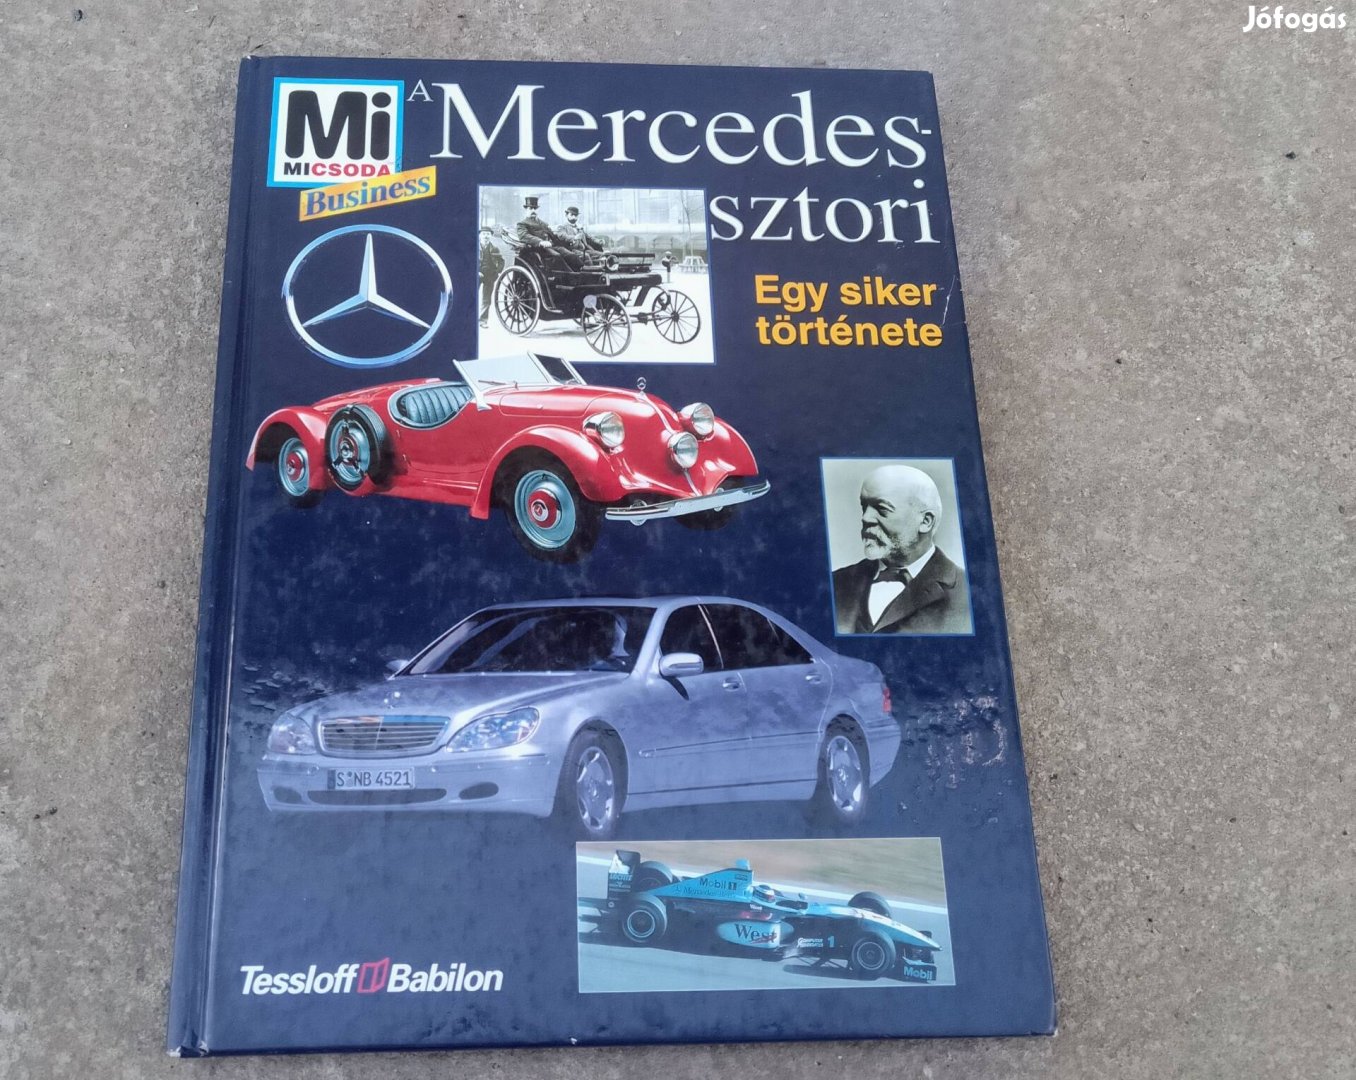 Mercedes Sztori, Mercedes története magyar nyelvű könyv. (1999)